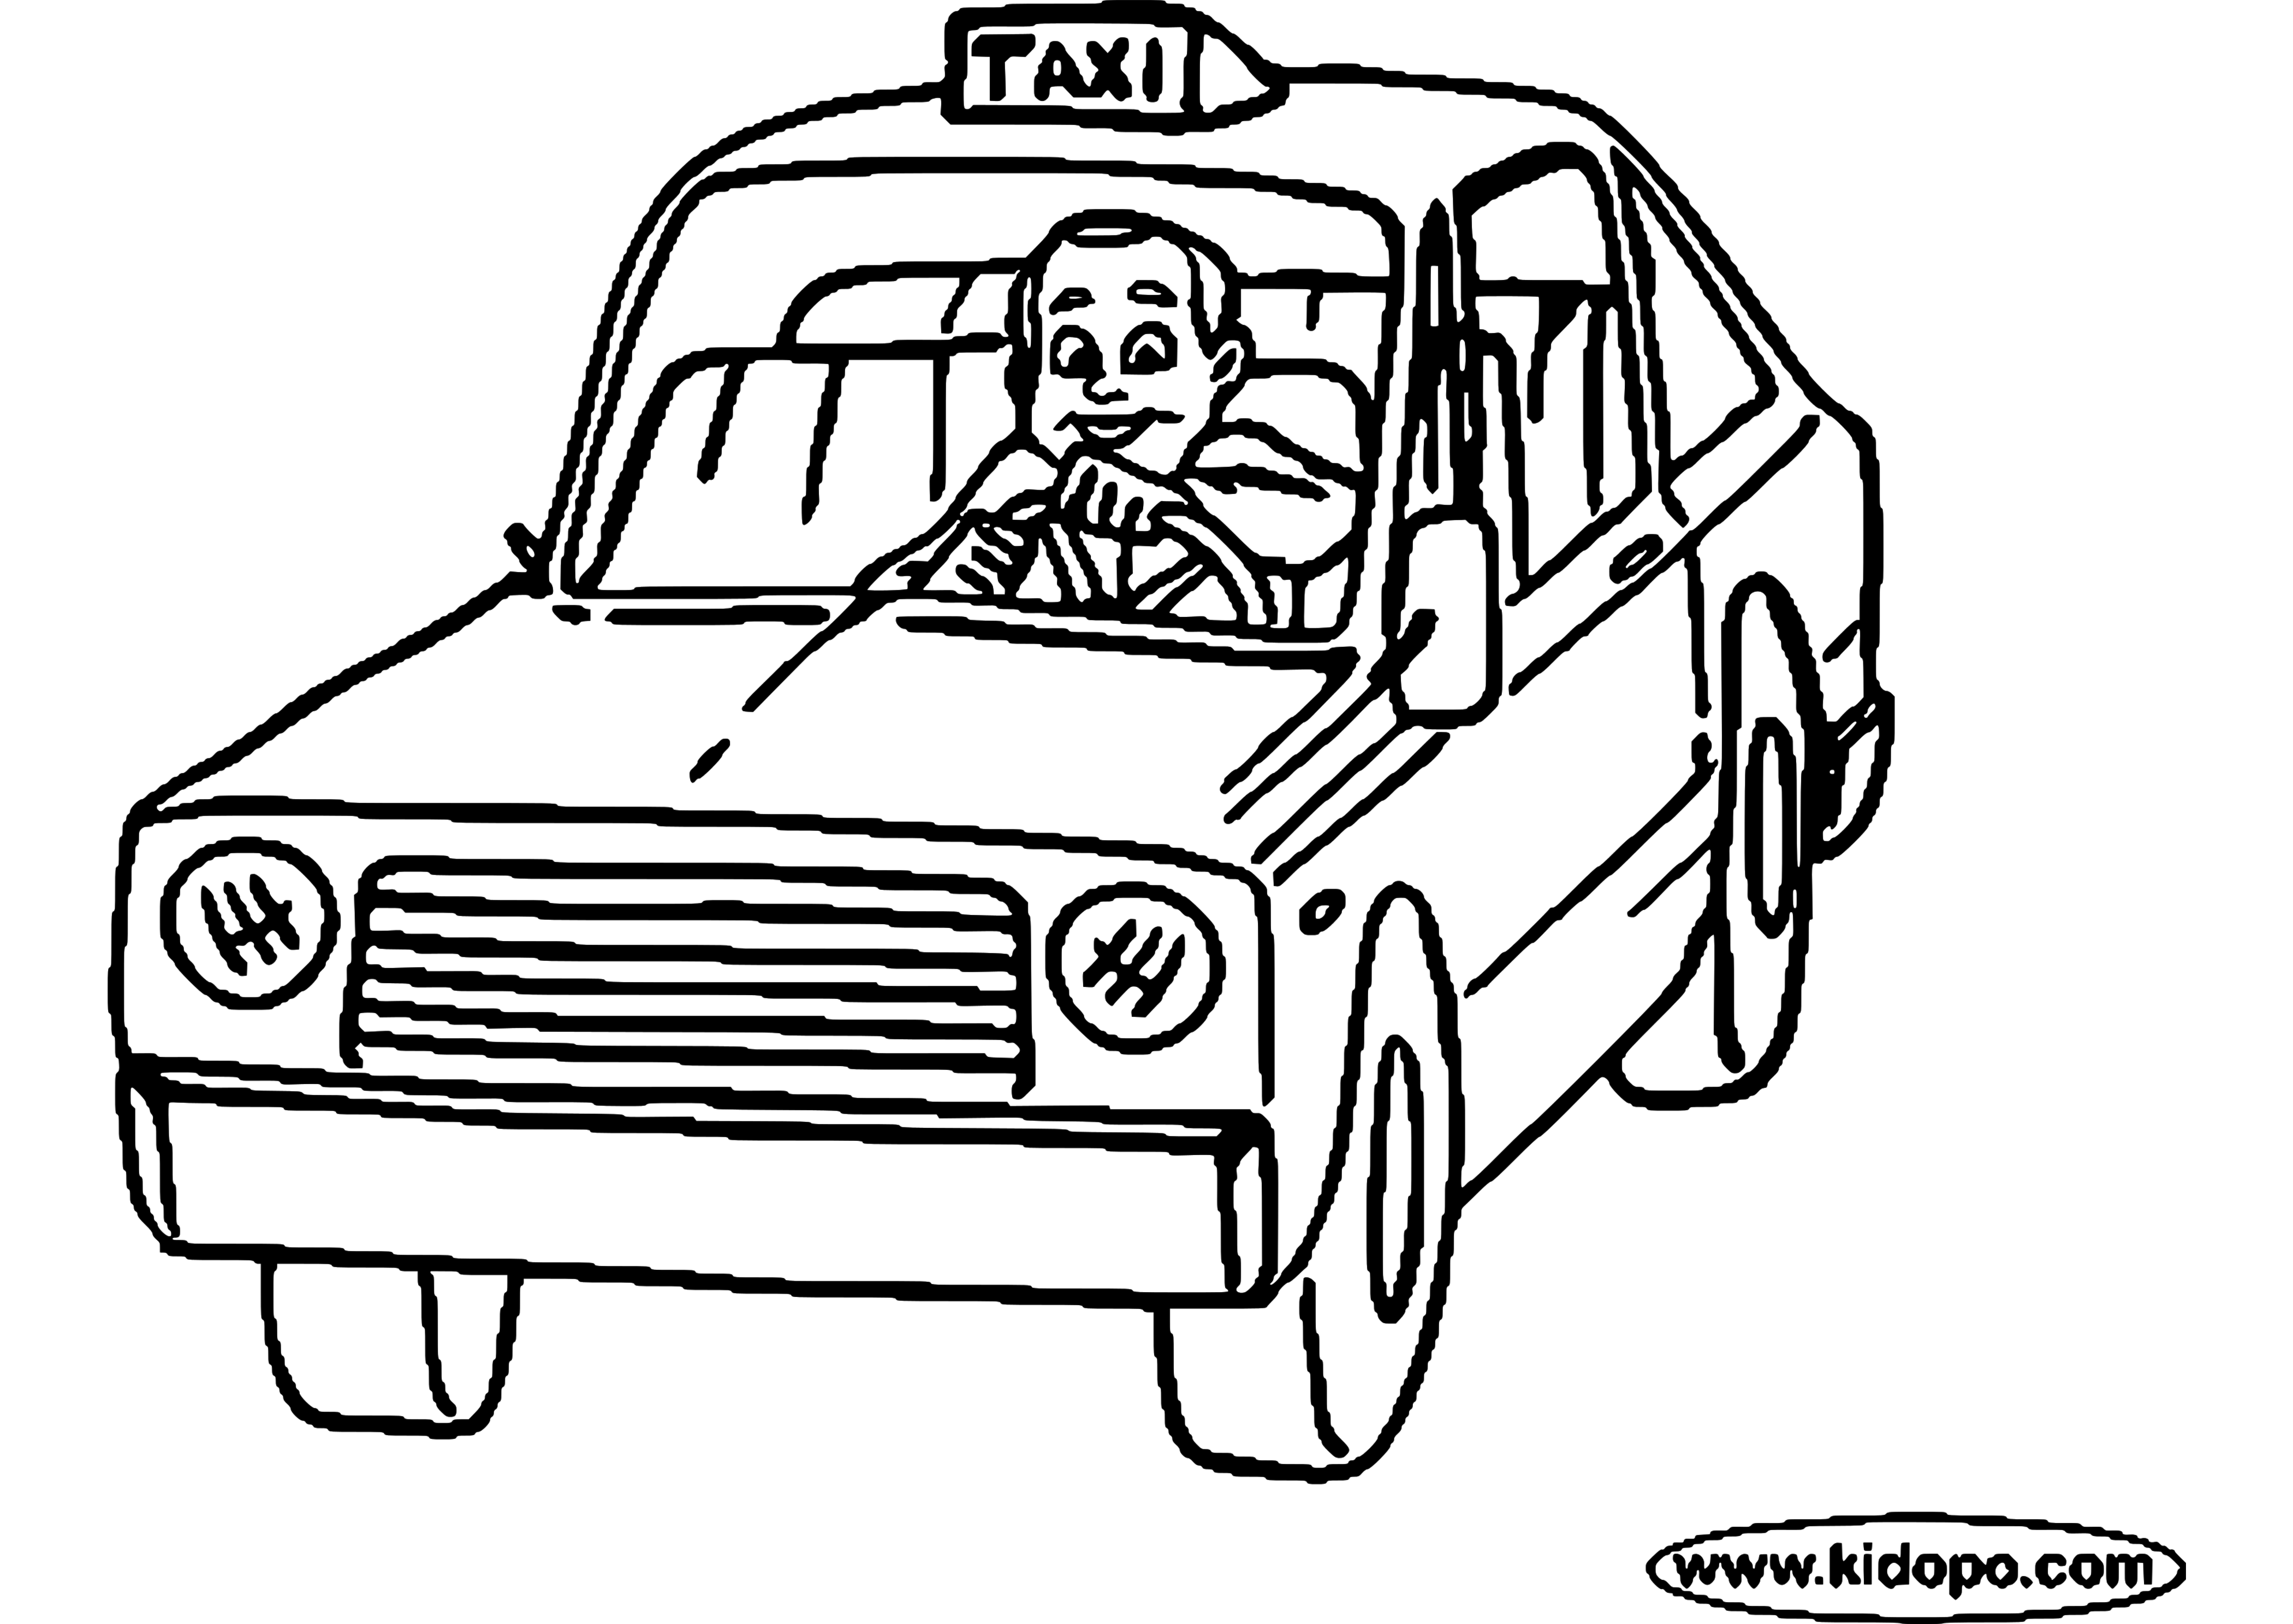 Раскраска: такси (транспорт) #137230 - Бесплатные раскраски для печати